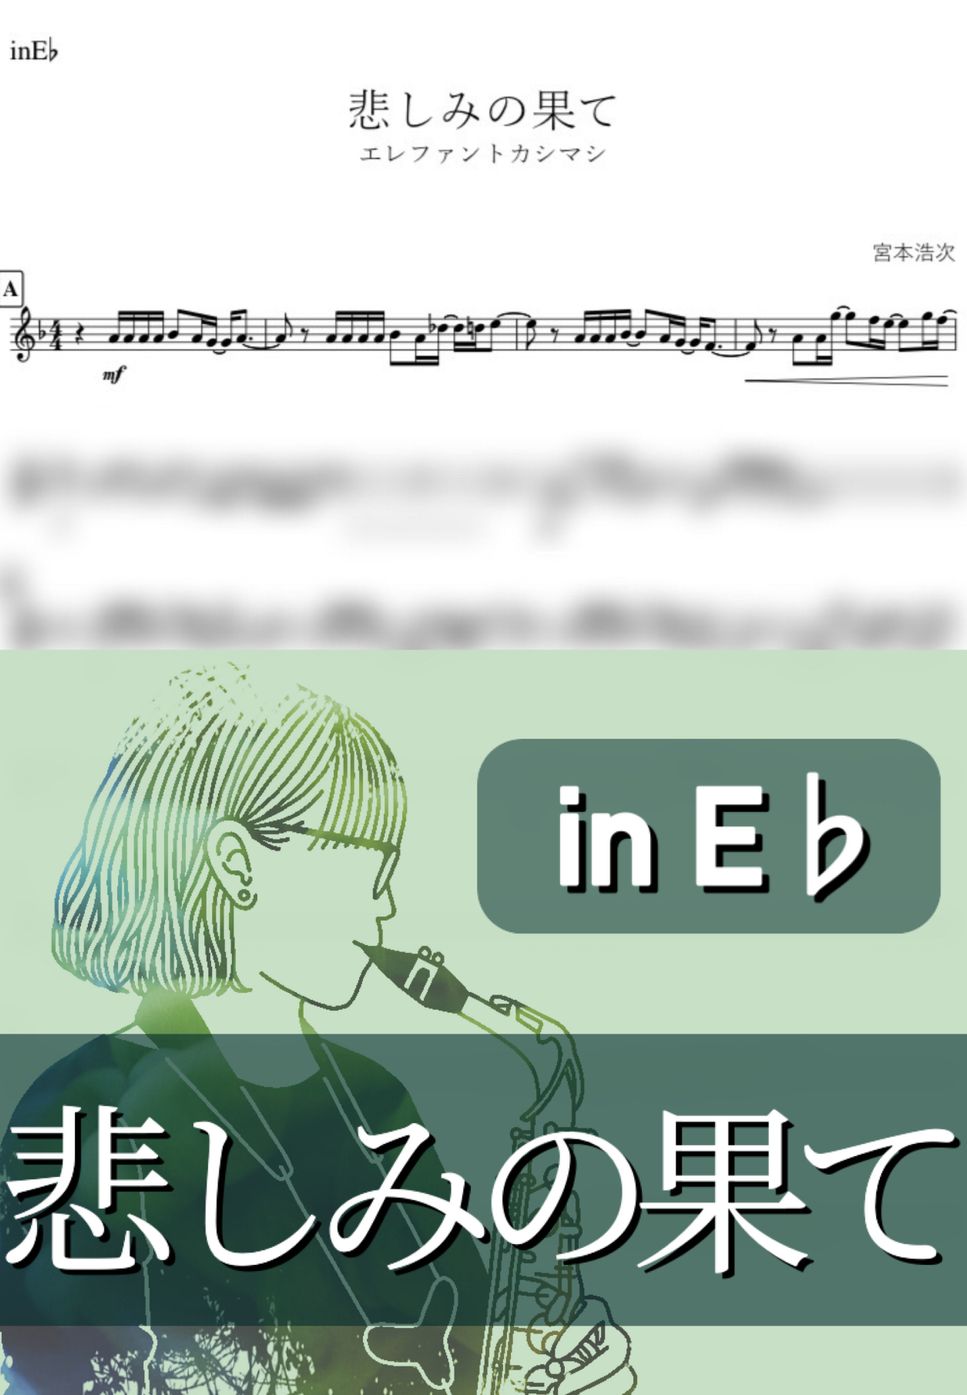 エレファントカシマシ - 悲しみの果て (E♭) by kanamusic